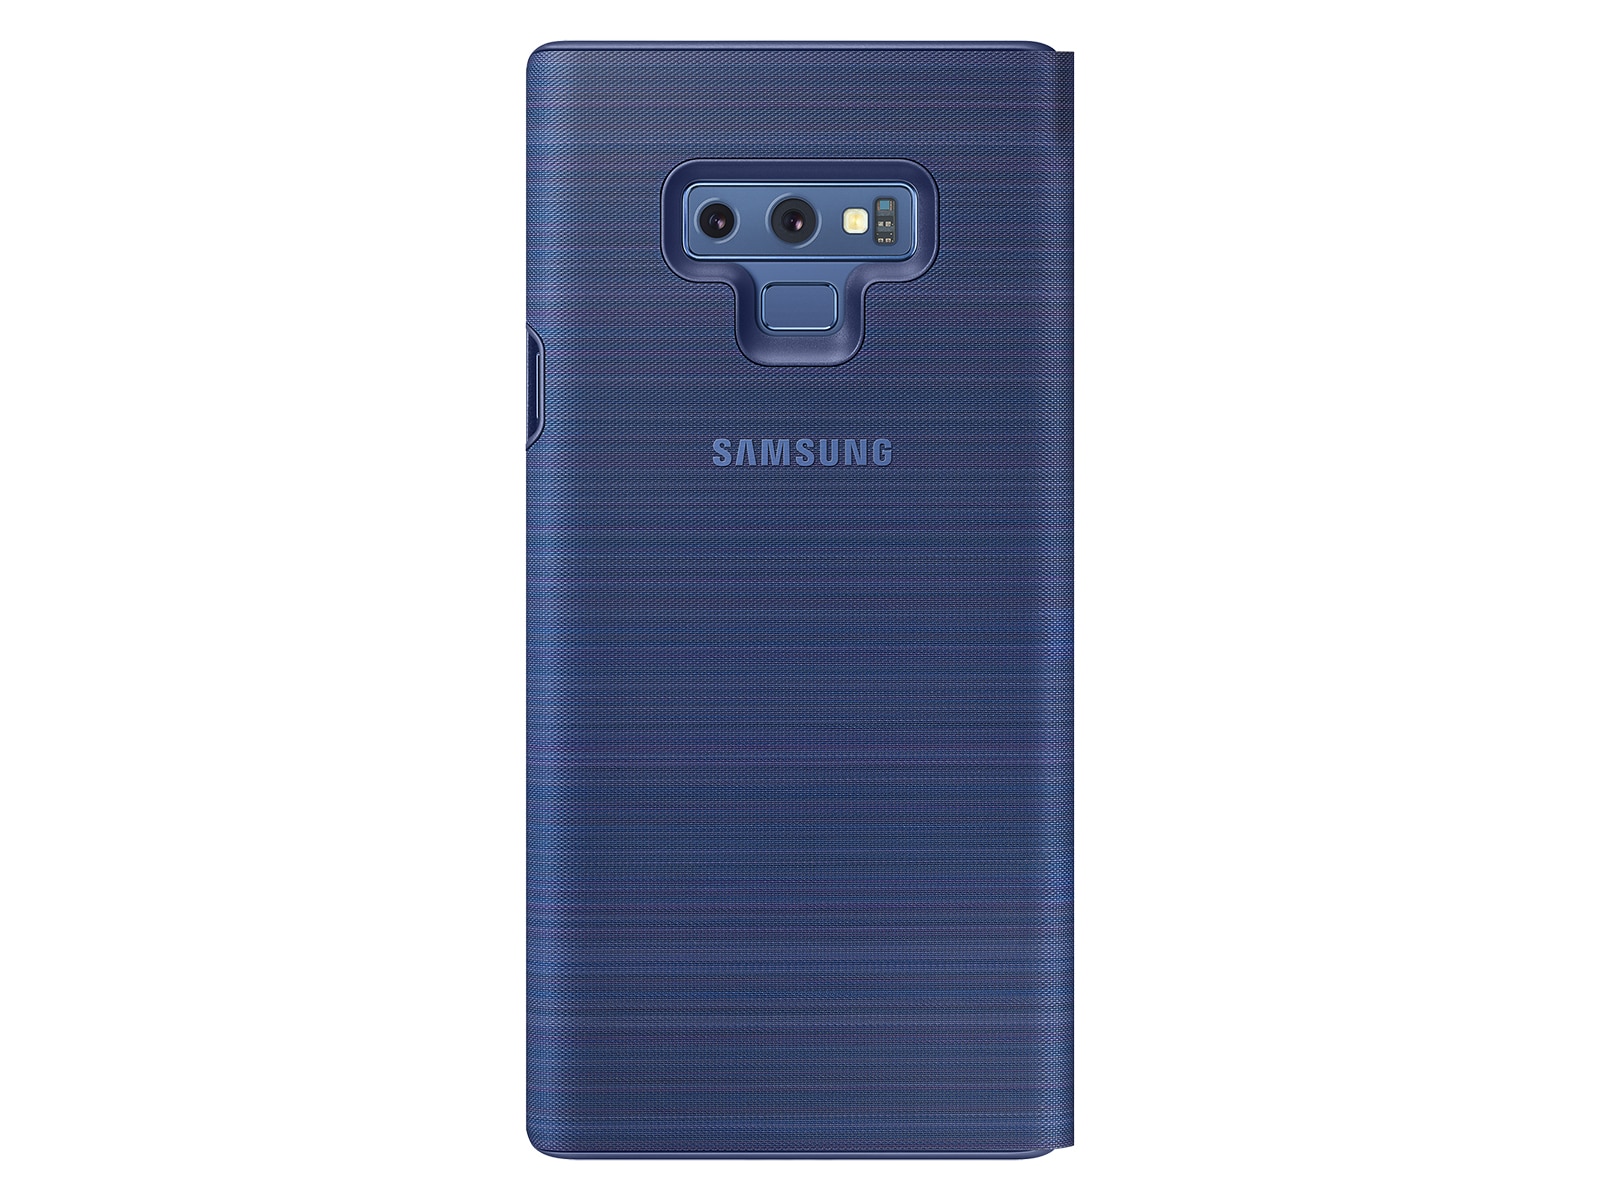 Desalentar revisión Entrelazamiento Funda para billetera LED para Galaxy Note9, accesorios móviles azul océano  - EF-NN960PLEGUS | Samsung ES